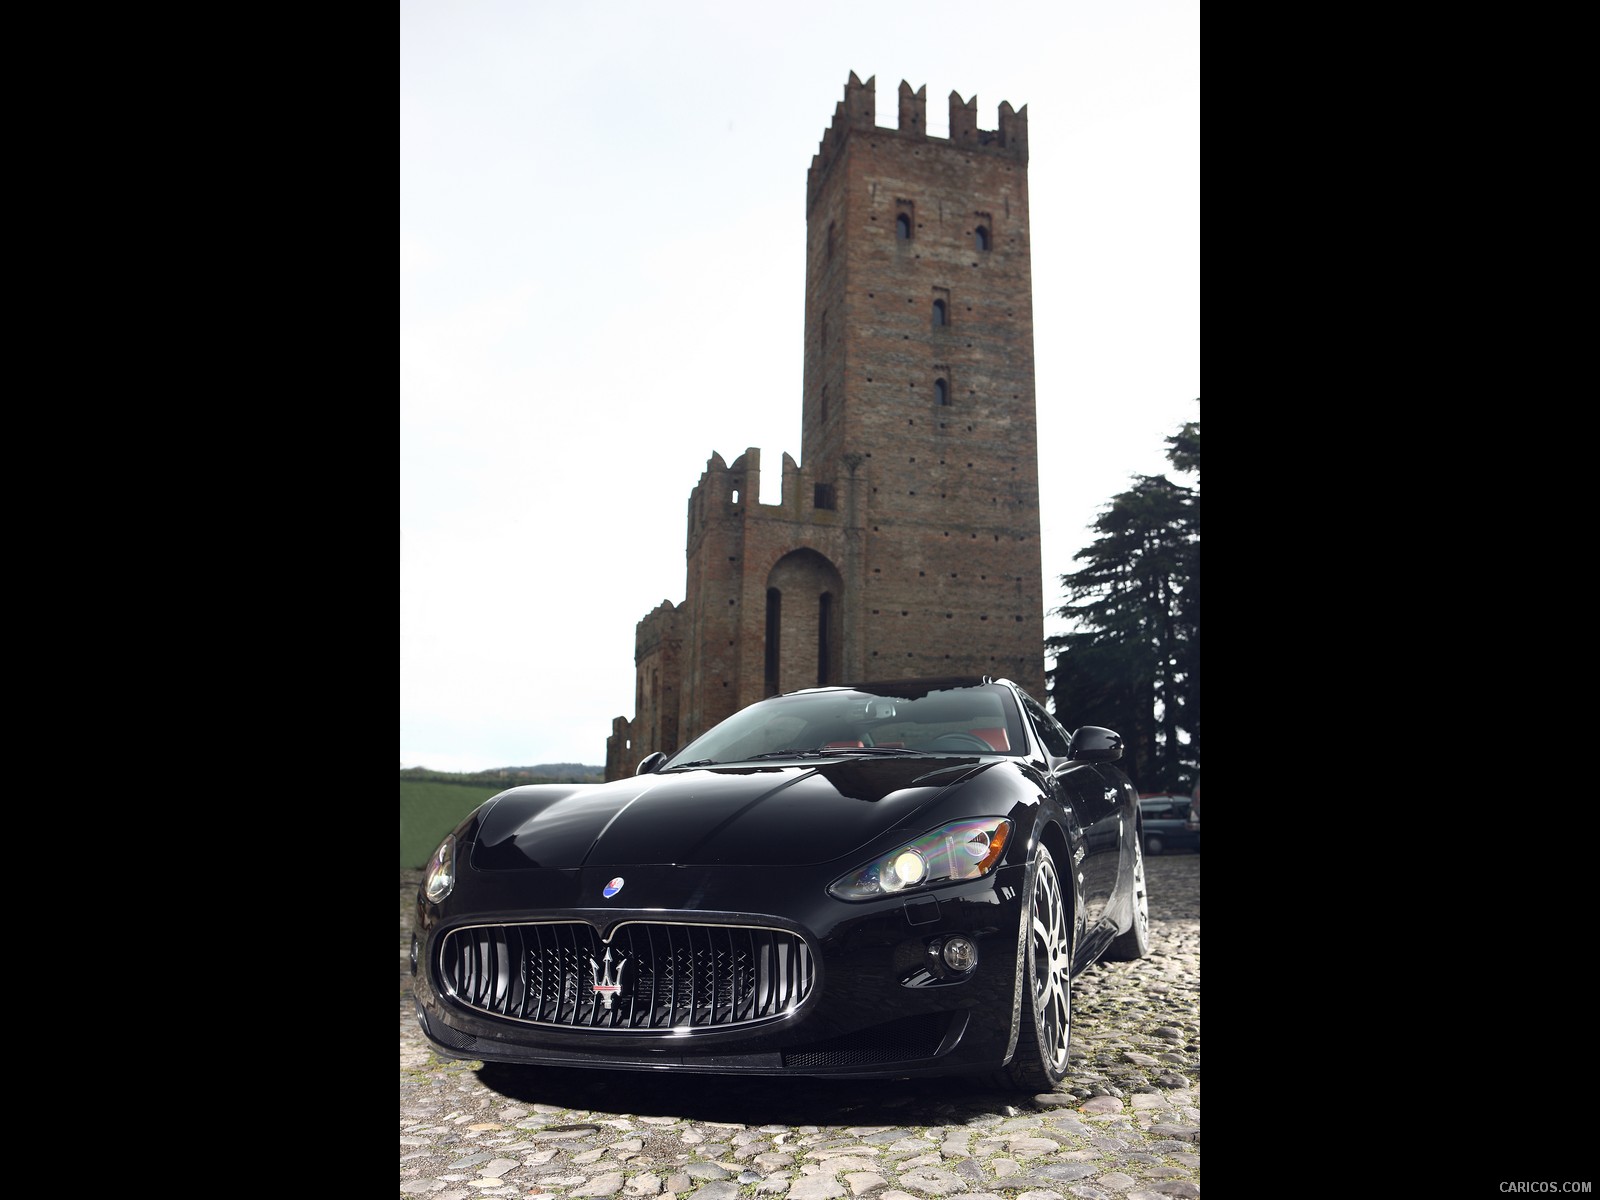 Maserati GranTurismo S (2009)  - Front Angle , #9 of 40